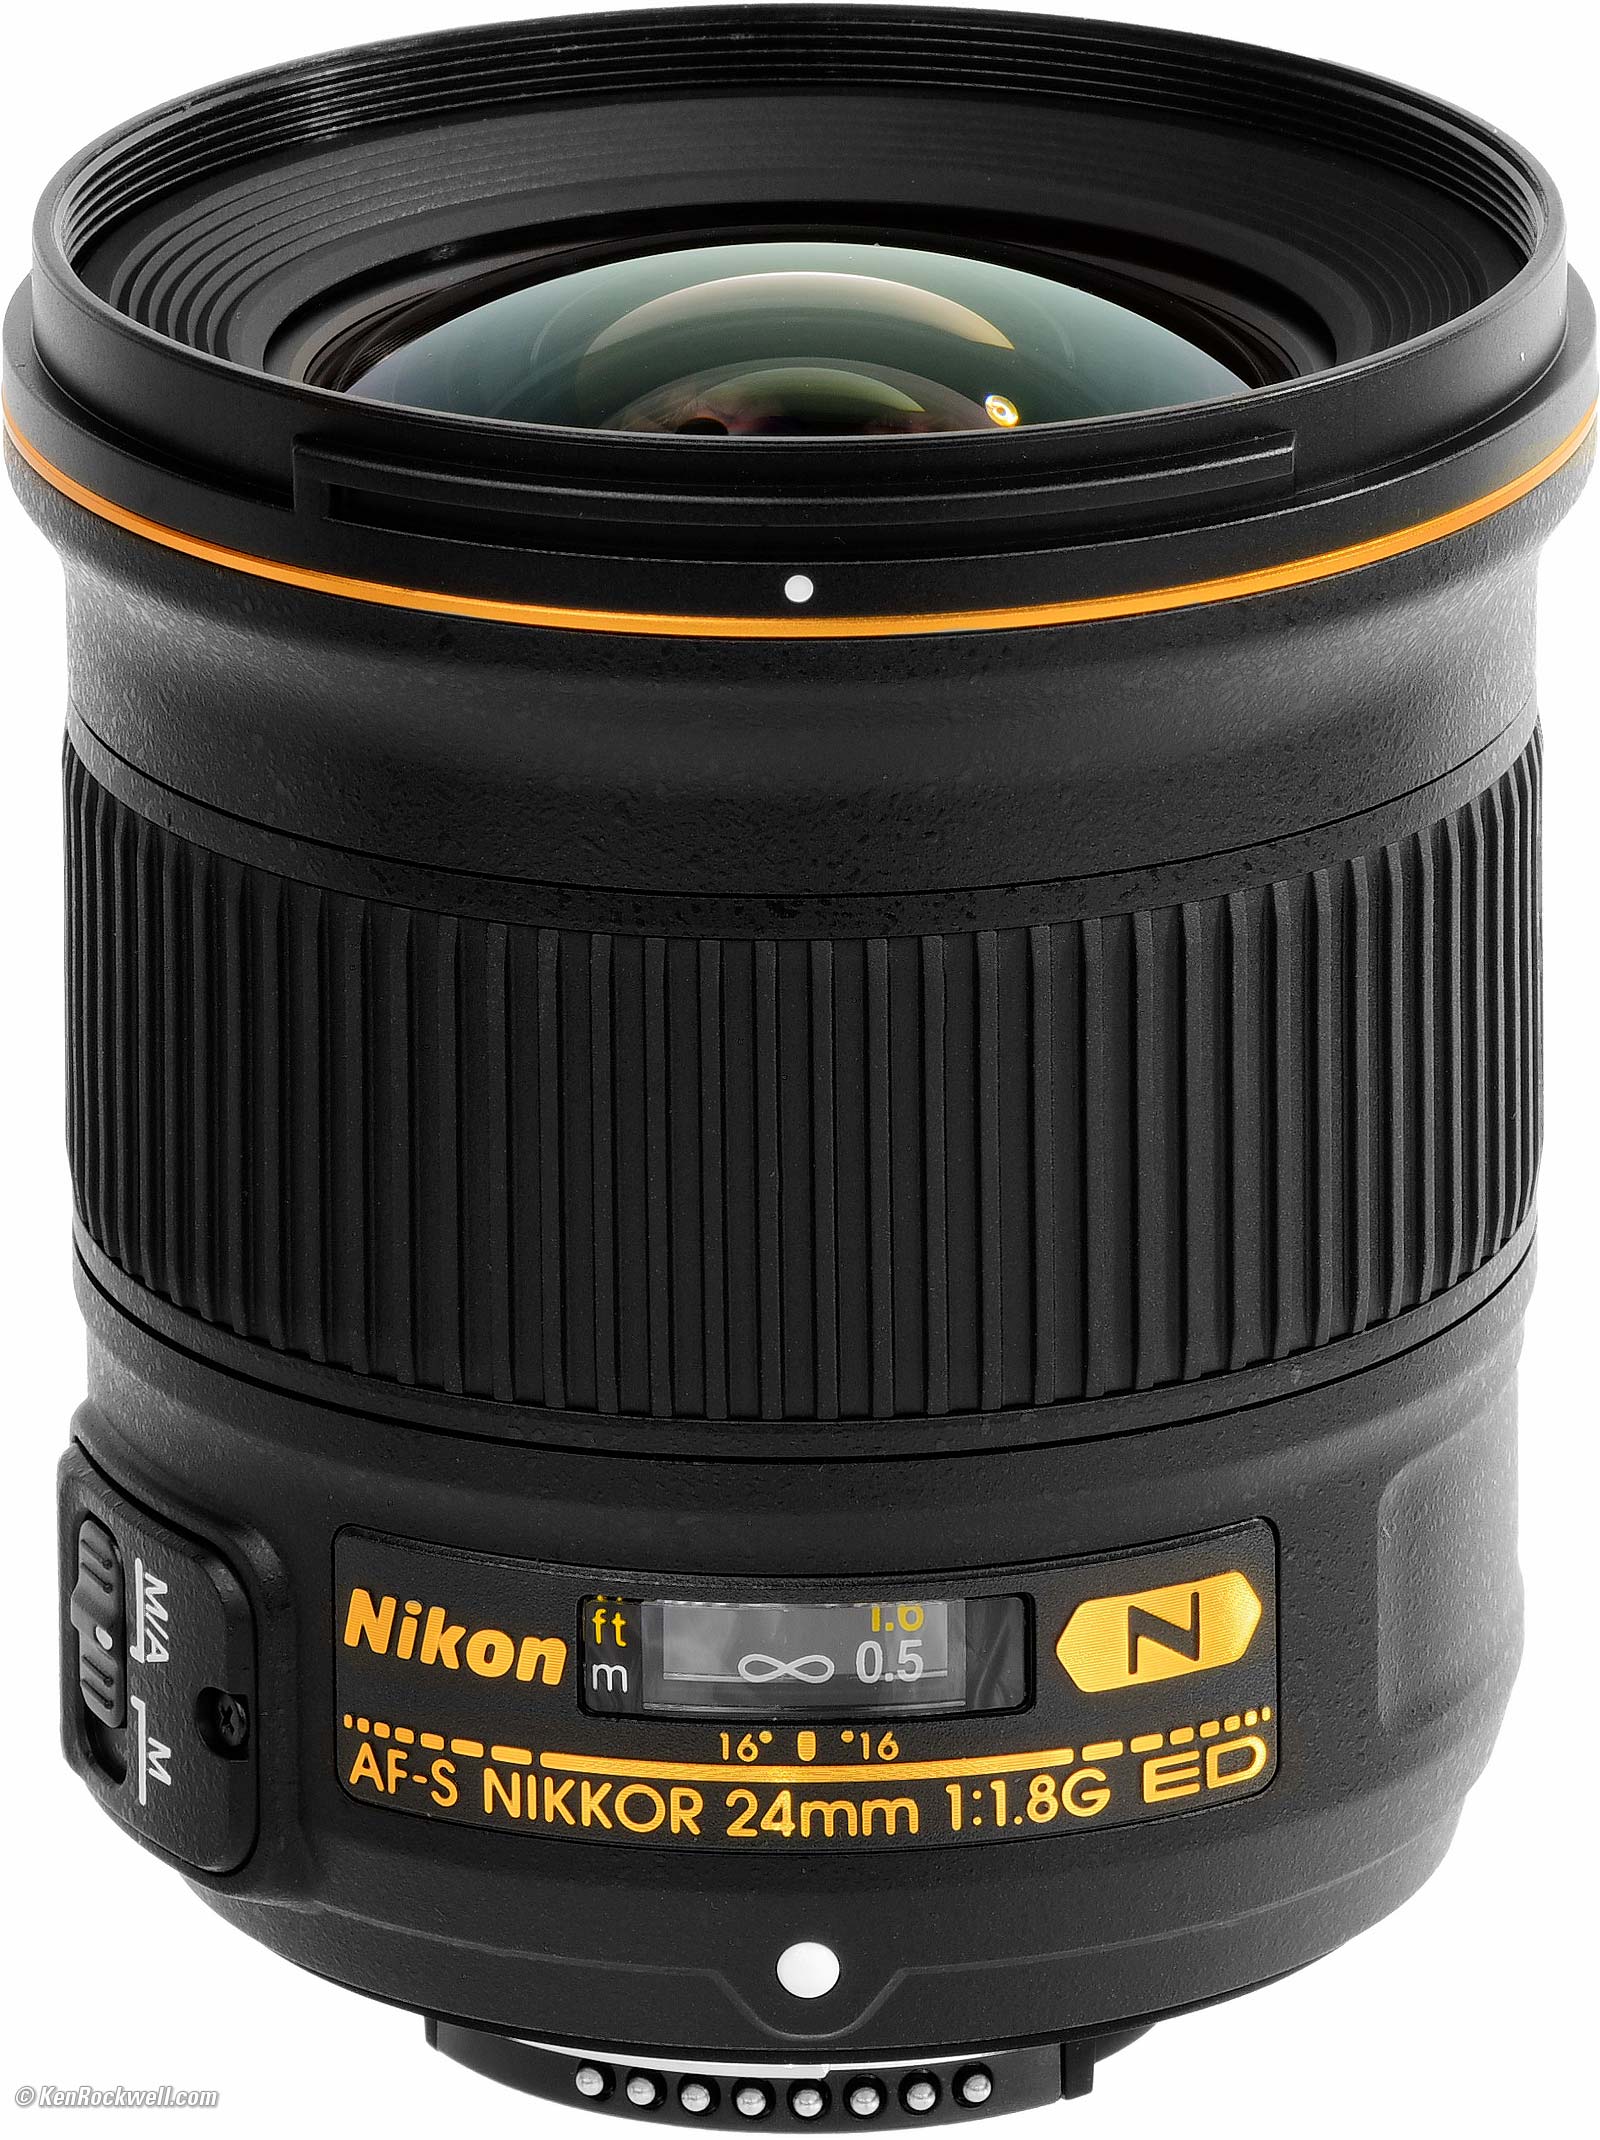 NIKON Nikkor 24mm AF-S f/1.8 G ED レンズ(ズーム) カメラ 家電